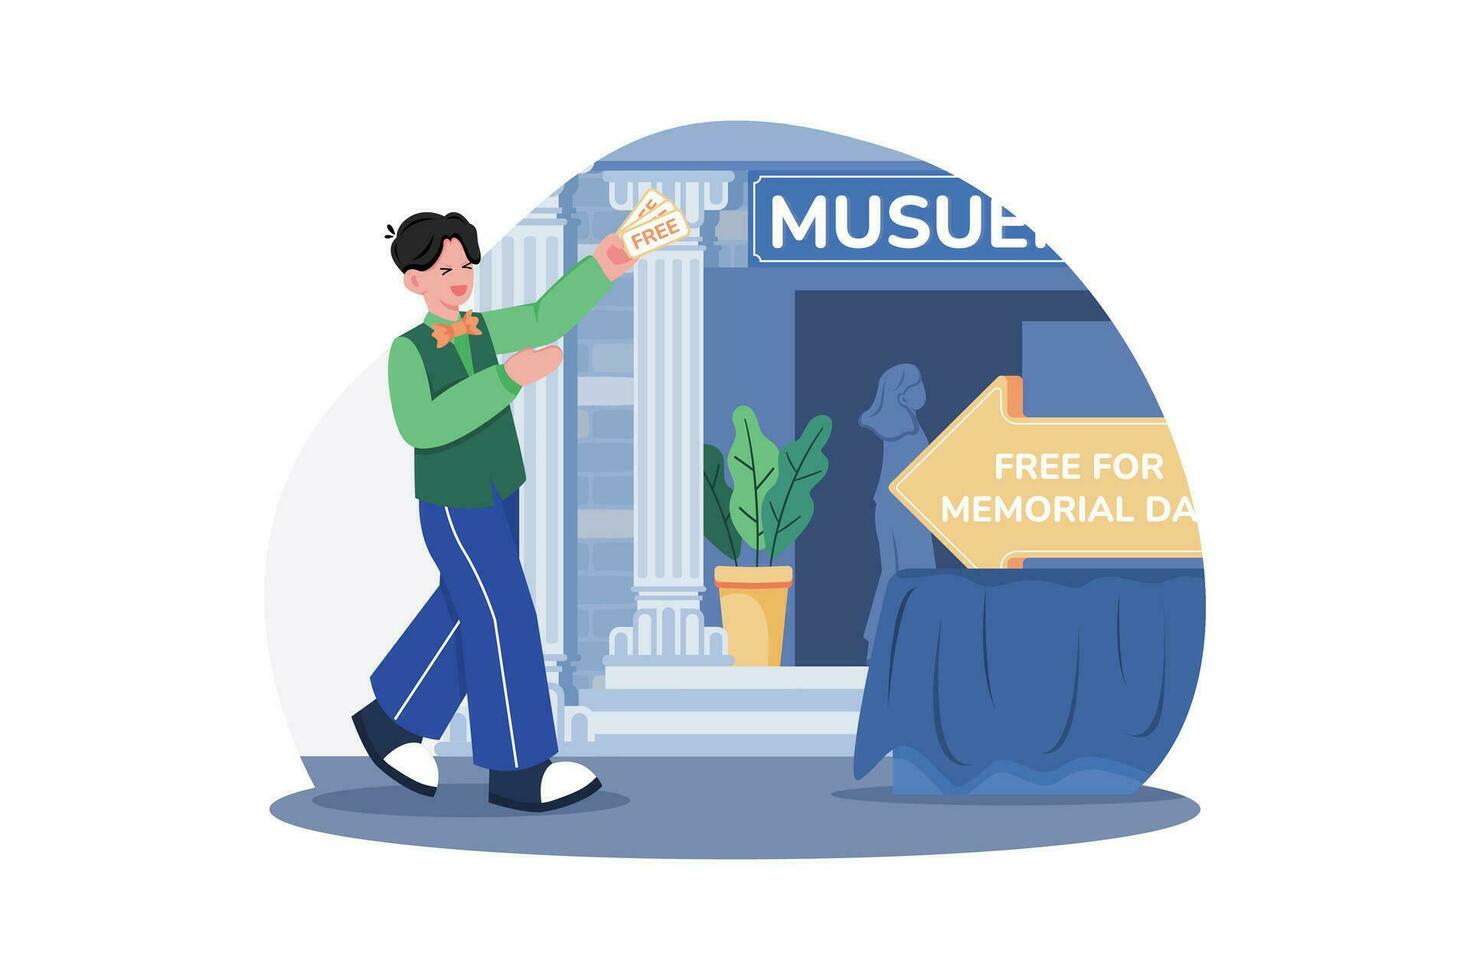 museos oferta gratis admisión en monumento día. vector